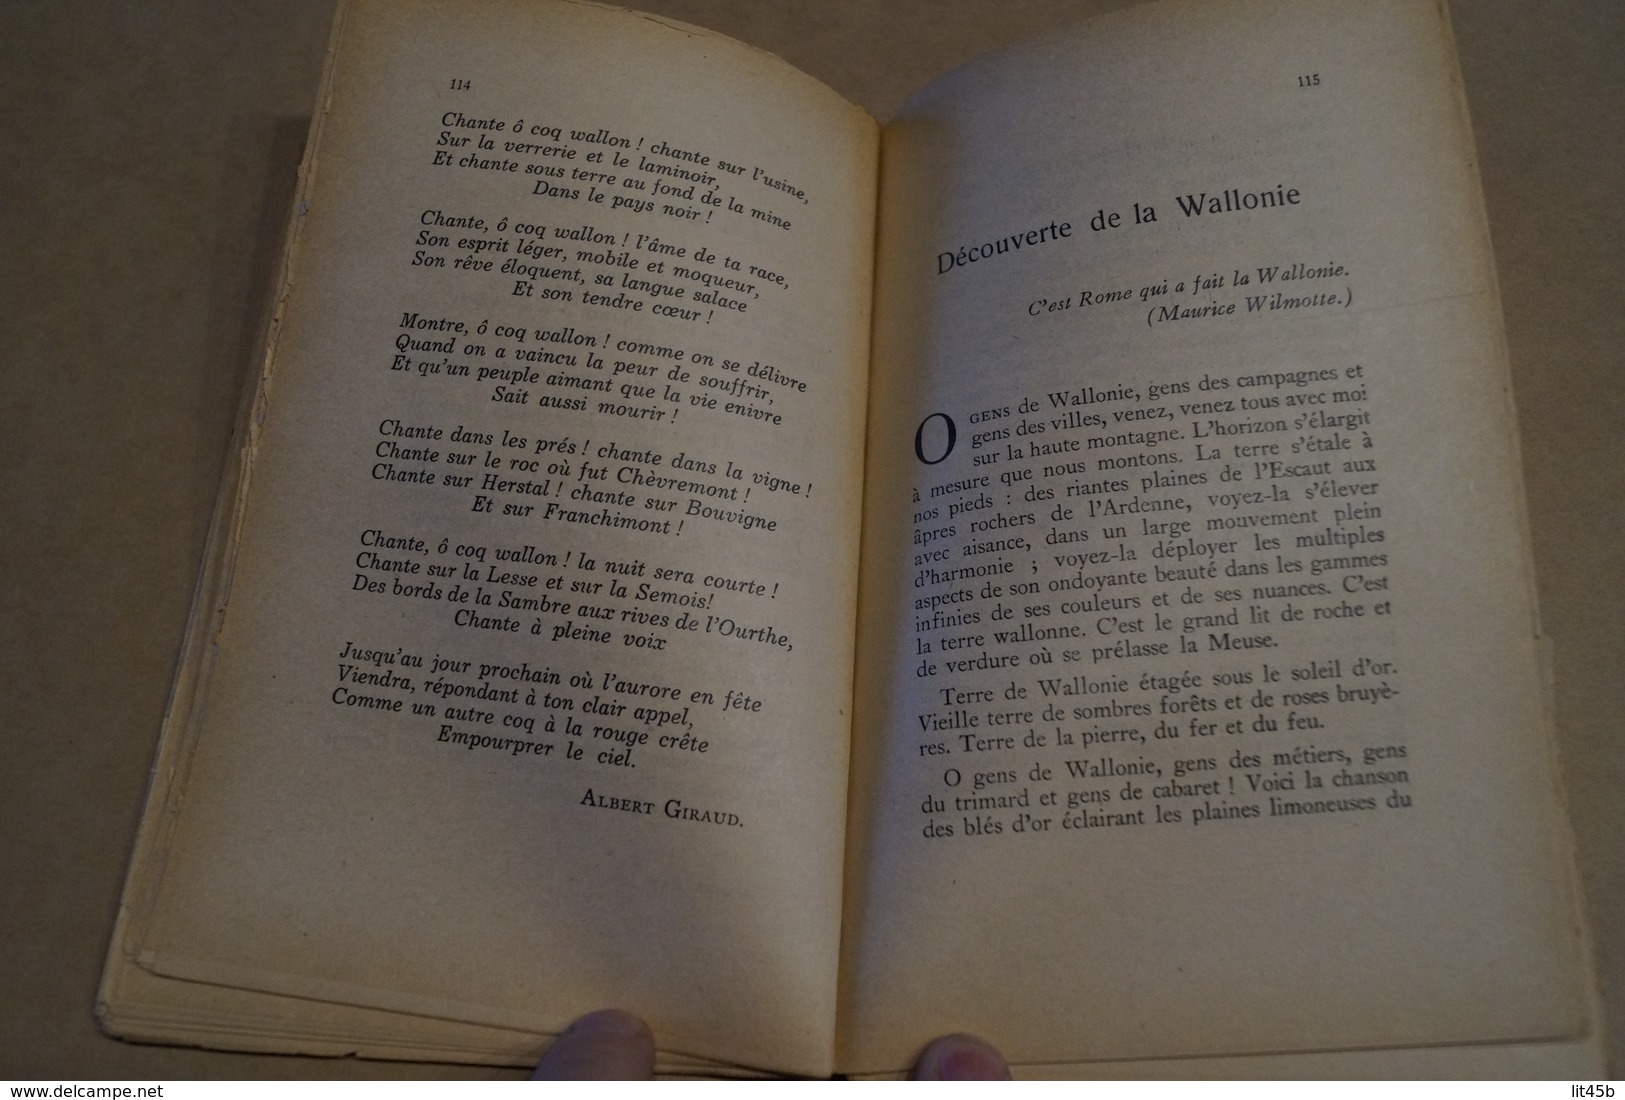 ancien almanach Wallon 1947,édité en 1946,complet 234 pages,20 Cm./12,5 Cm.collection